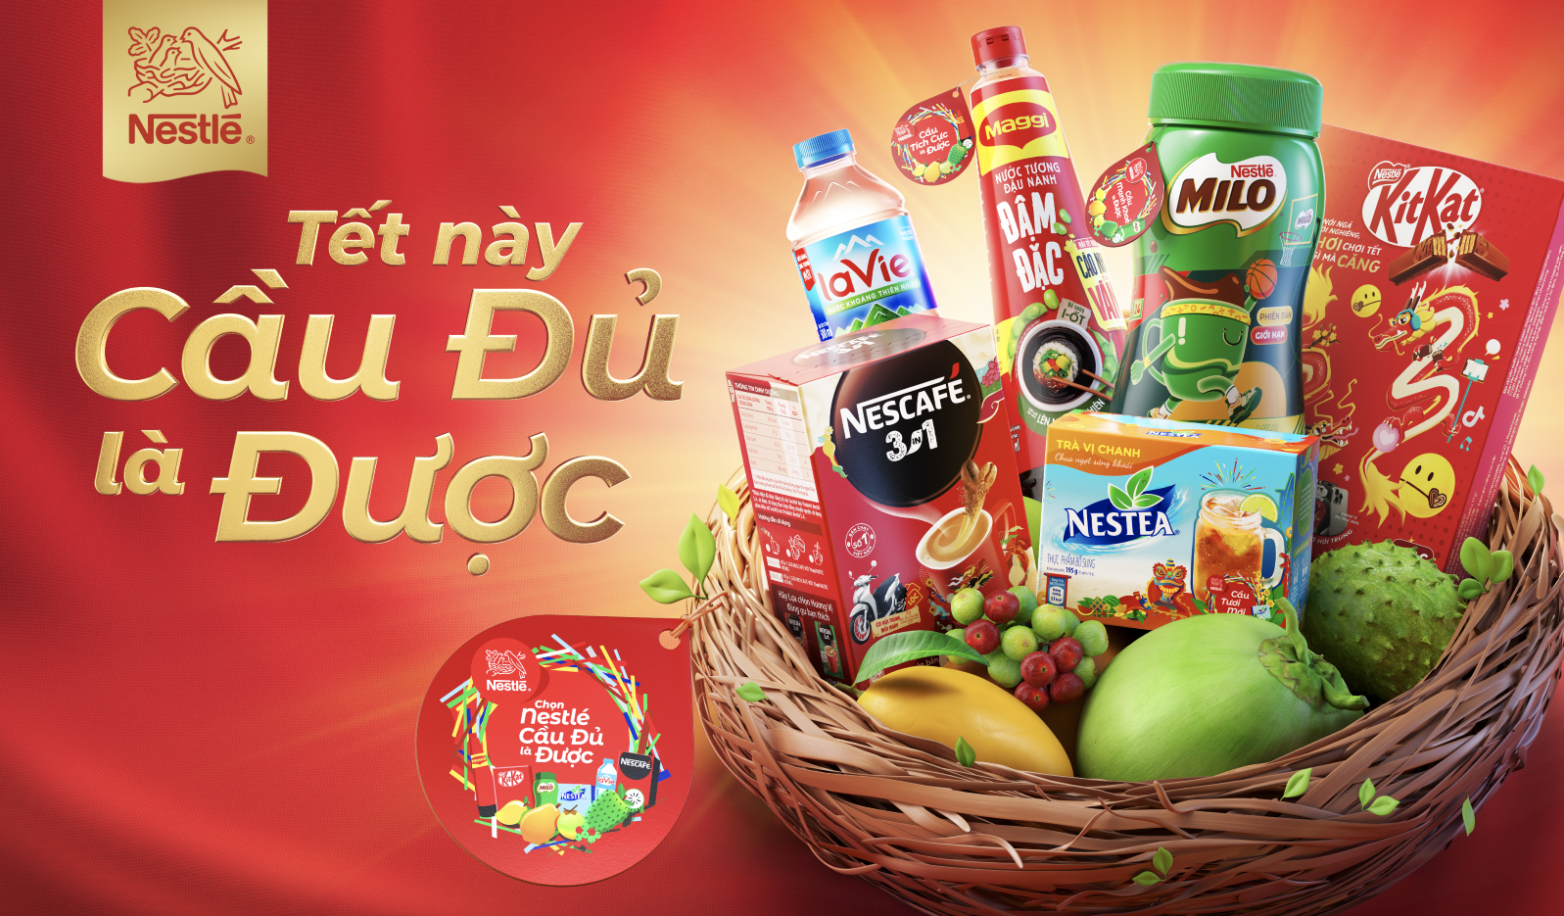 Nestlé Vietnam kicks off its Tet 2024 campaign with message 